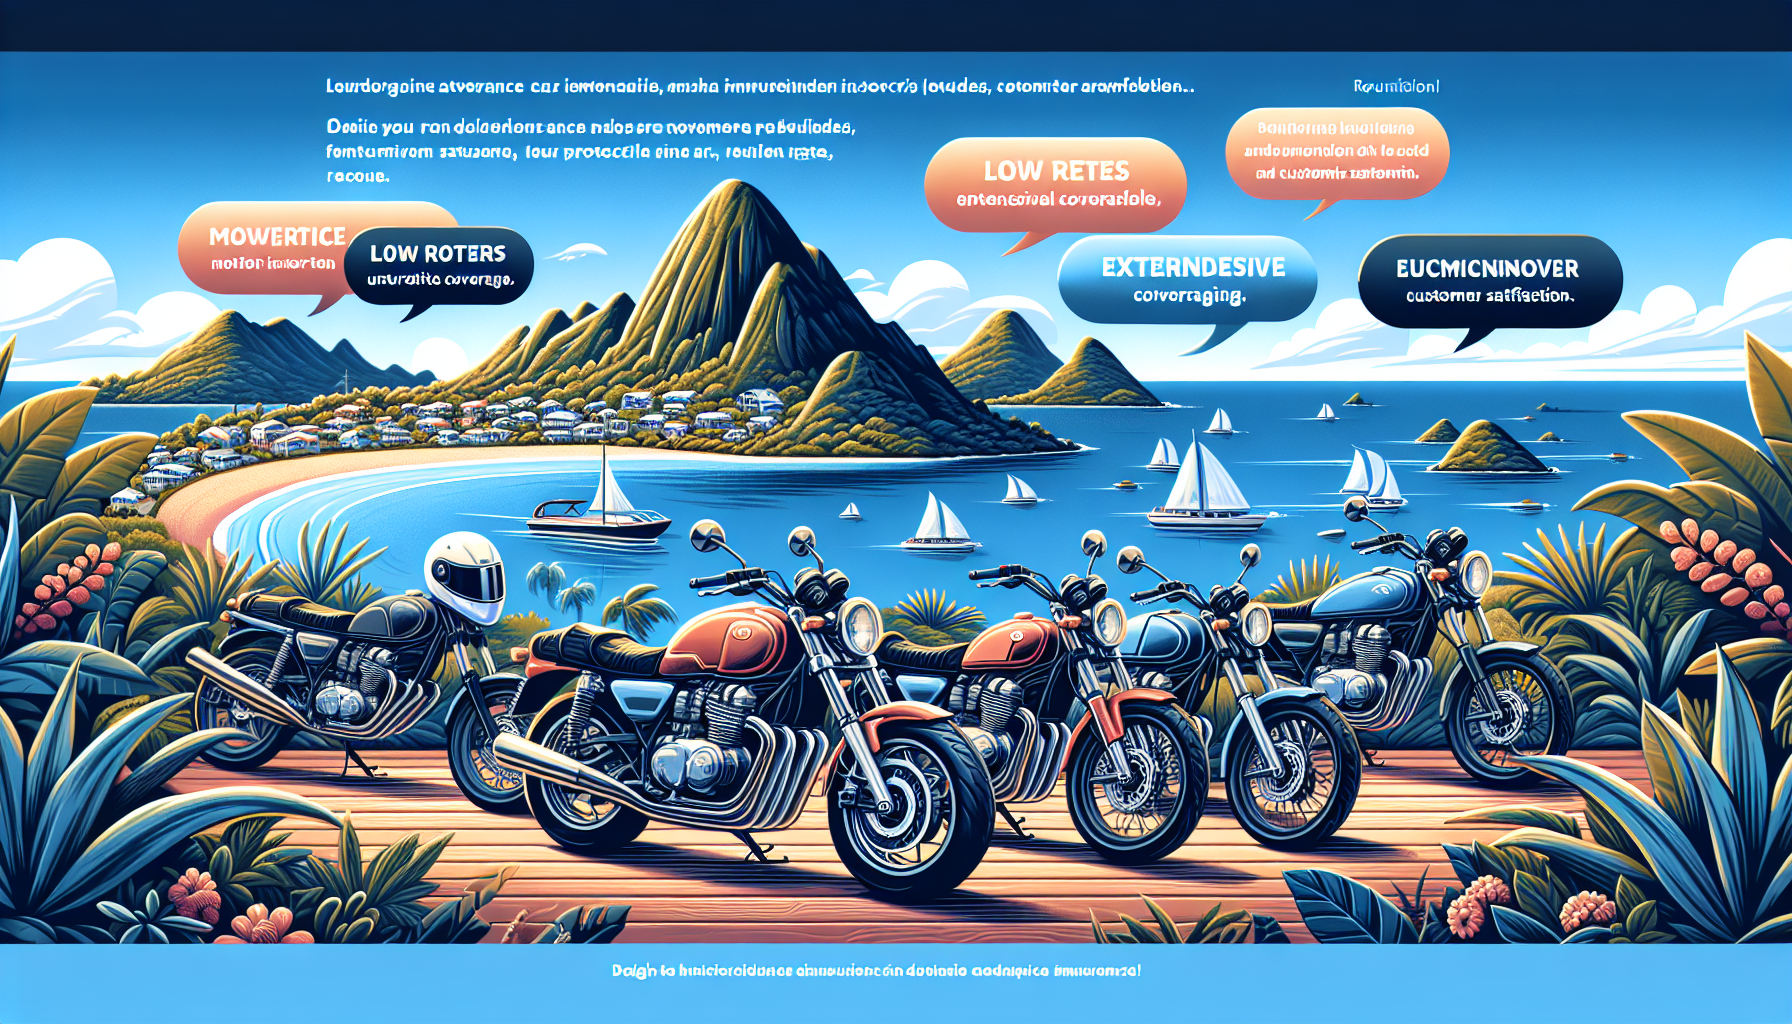 découvrez les particularités des compagnies d'assurance moto à la réunion et trouvez la meilleure assurance pour votre moto sur l'île.